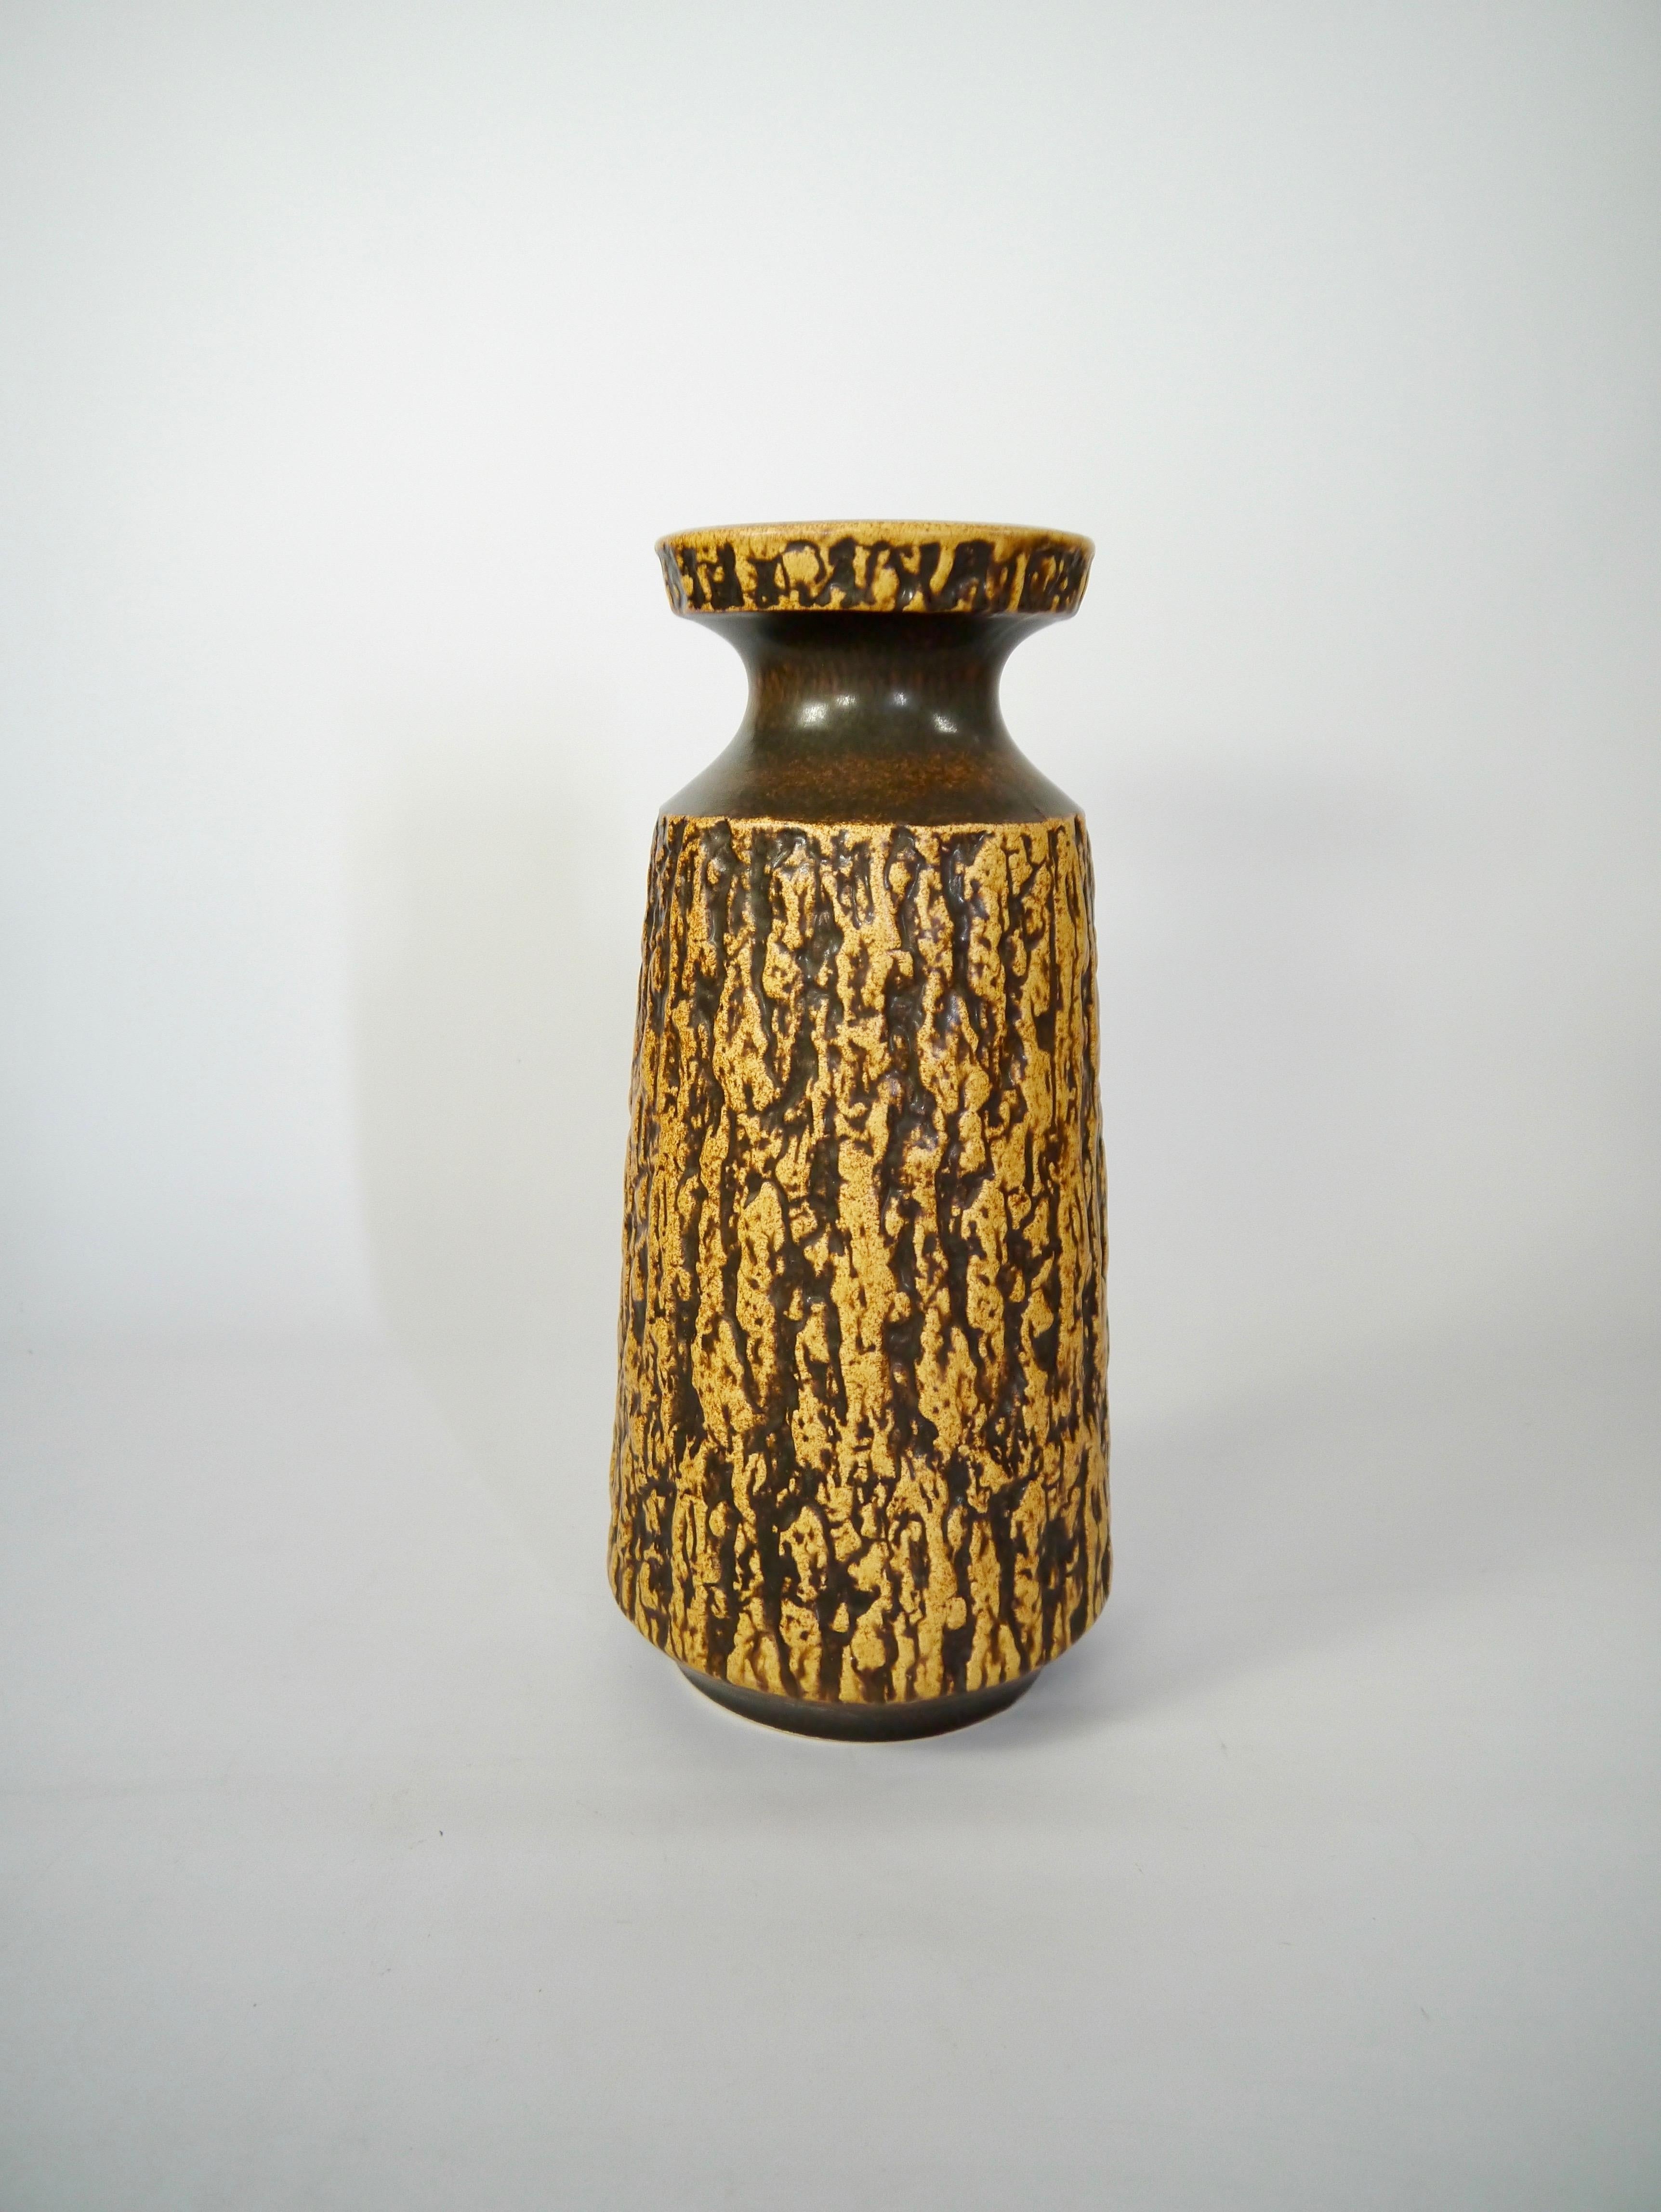 Grand vase de sol en lave grasse produit par Jasba dans les années 1960. Motif de forme organique, imitant l'écorce de pin. Couleur et motif très wabi-sabi.